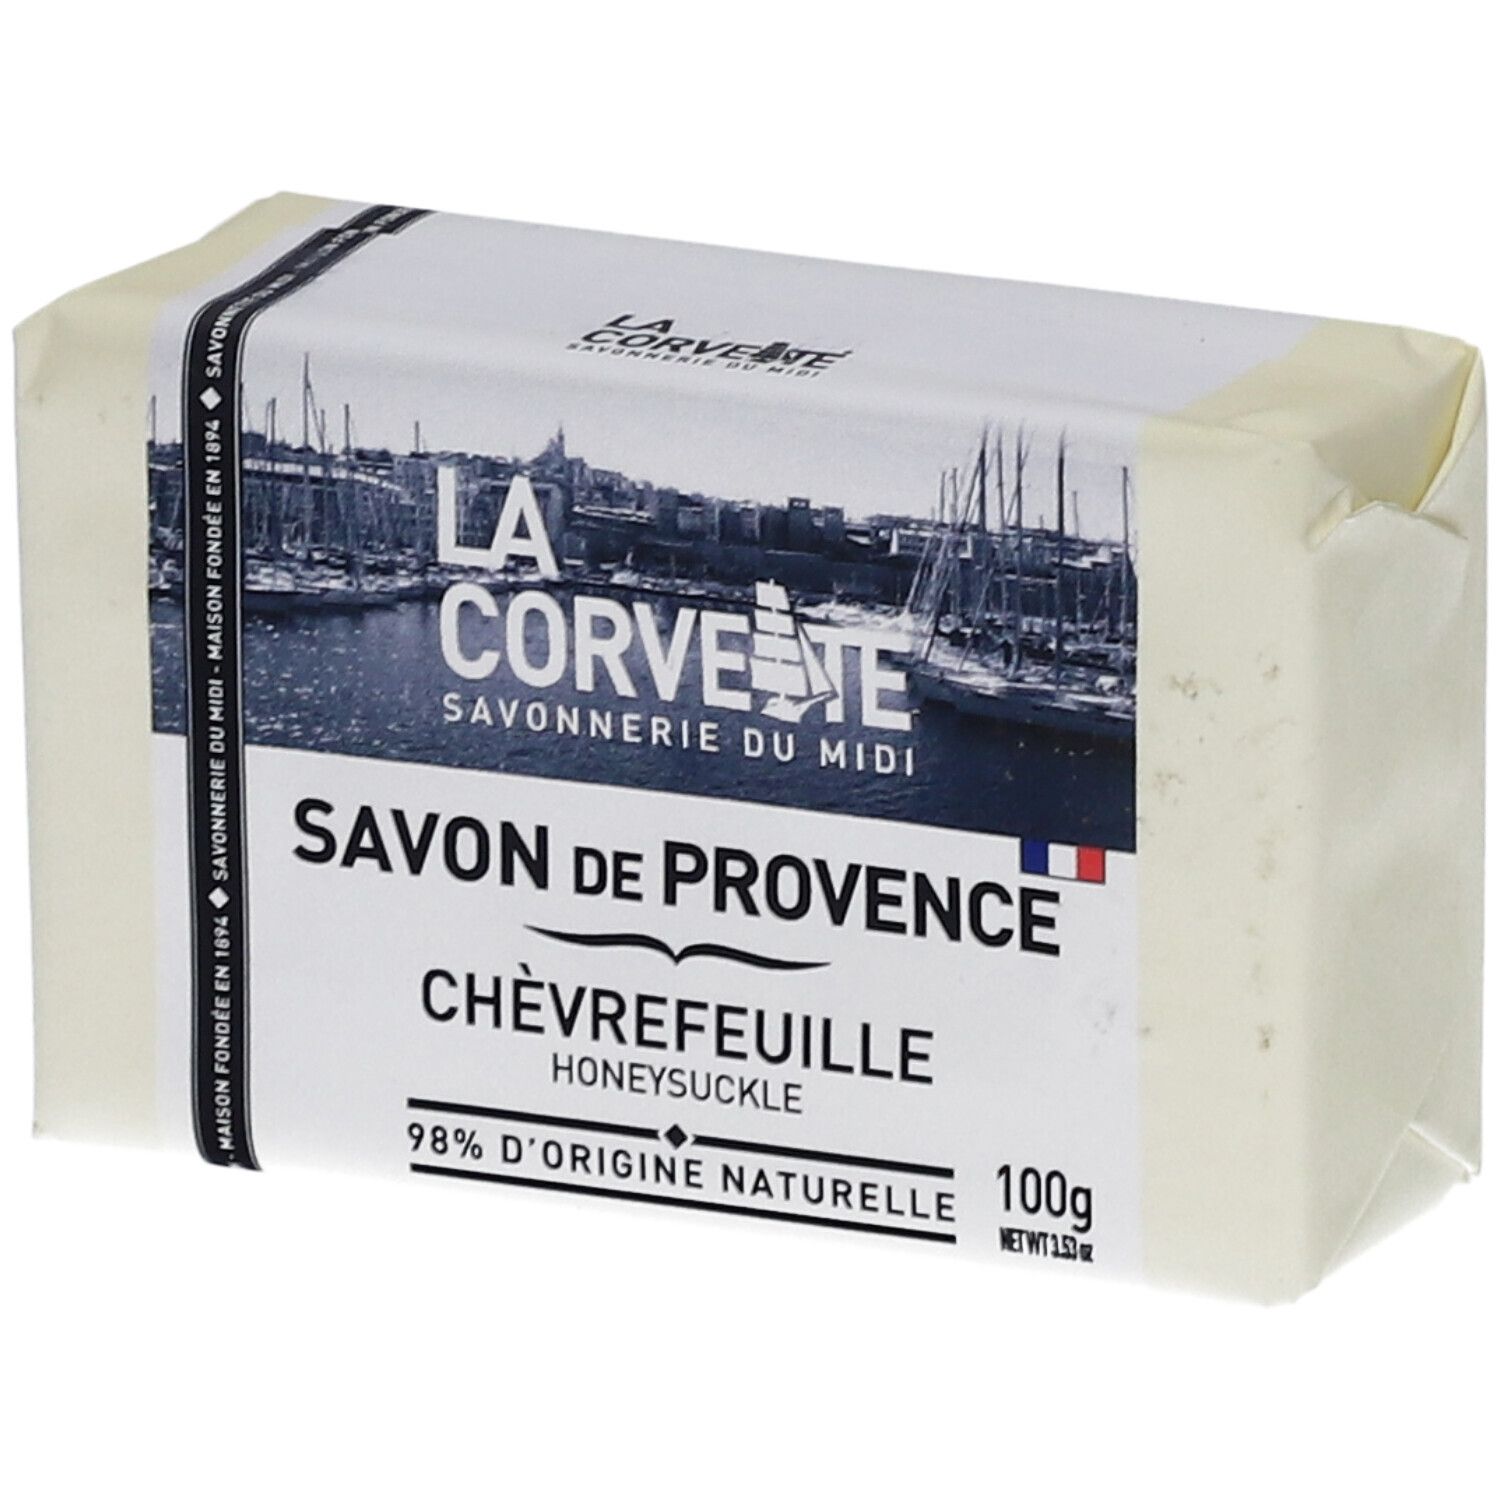 LA Corvette Savon de Provence Chèvrefeuille